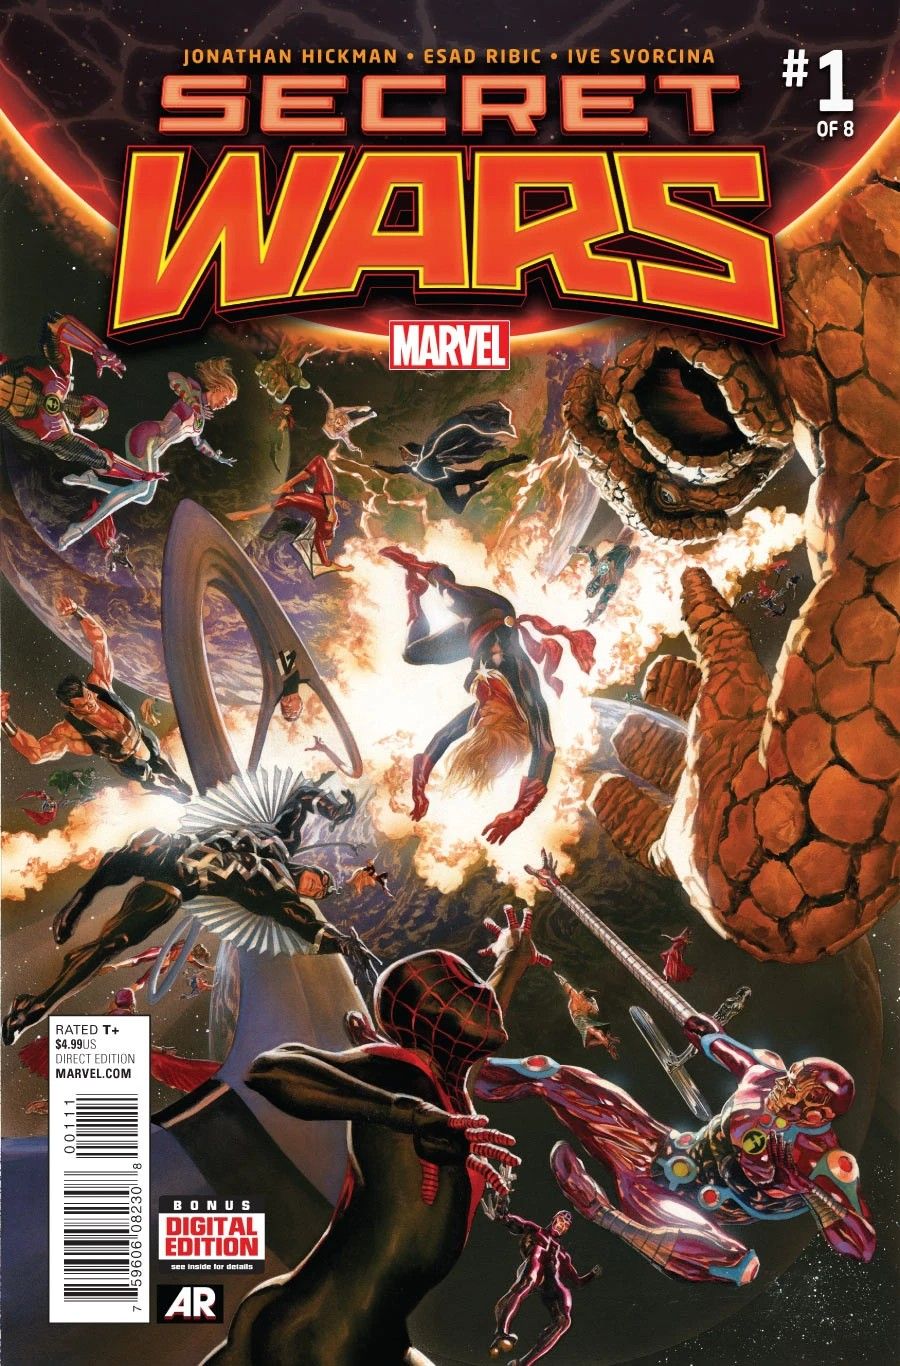 Os Vingadores, Quarteto Fantástico, X-Men e outros lutam por suas vidas em Guerras Secretas (2015) #1 da Marvel Comics